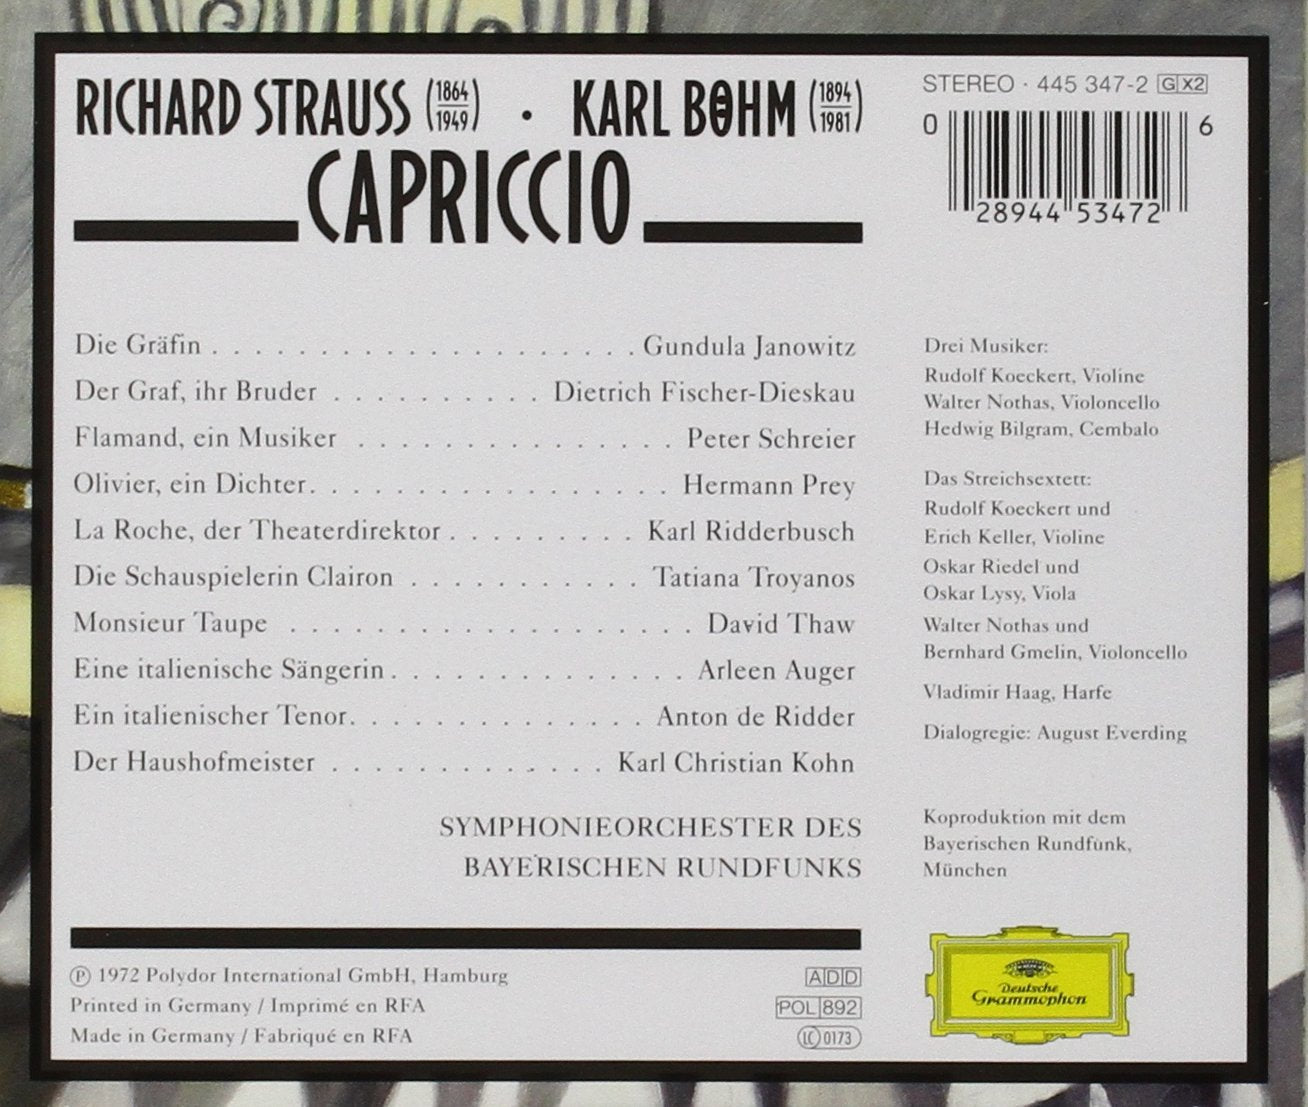 STRAUSS: Capriccio - Bohm, Orchester de Bayerischen Rundfunks (2 CDs)